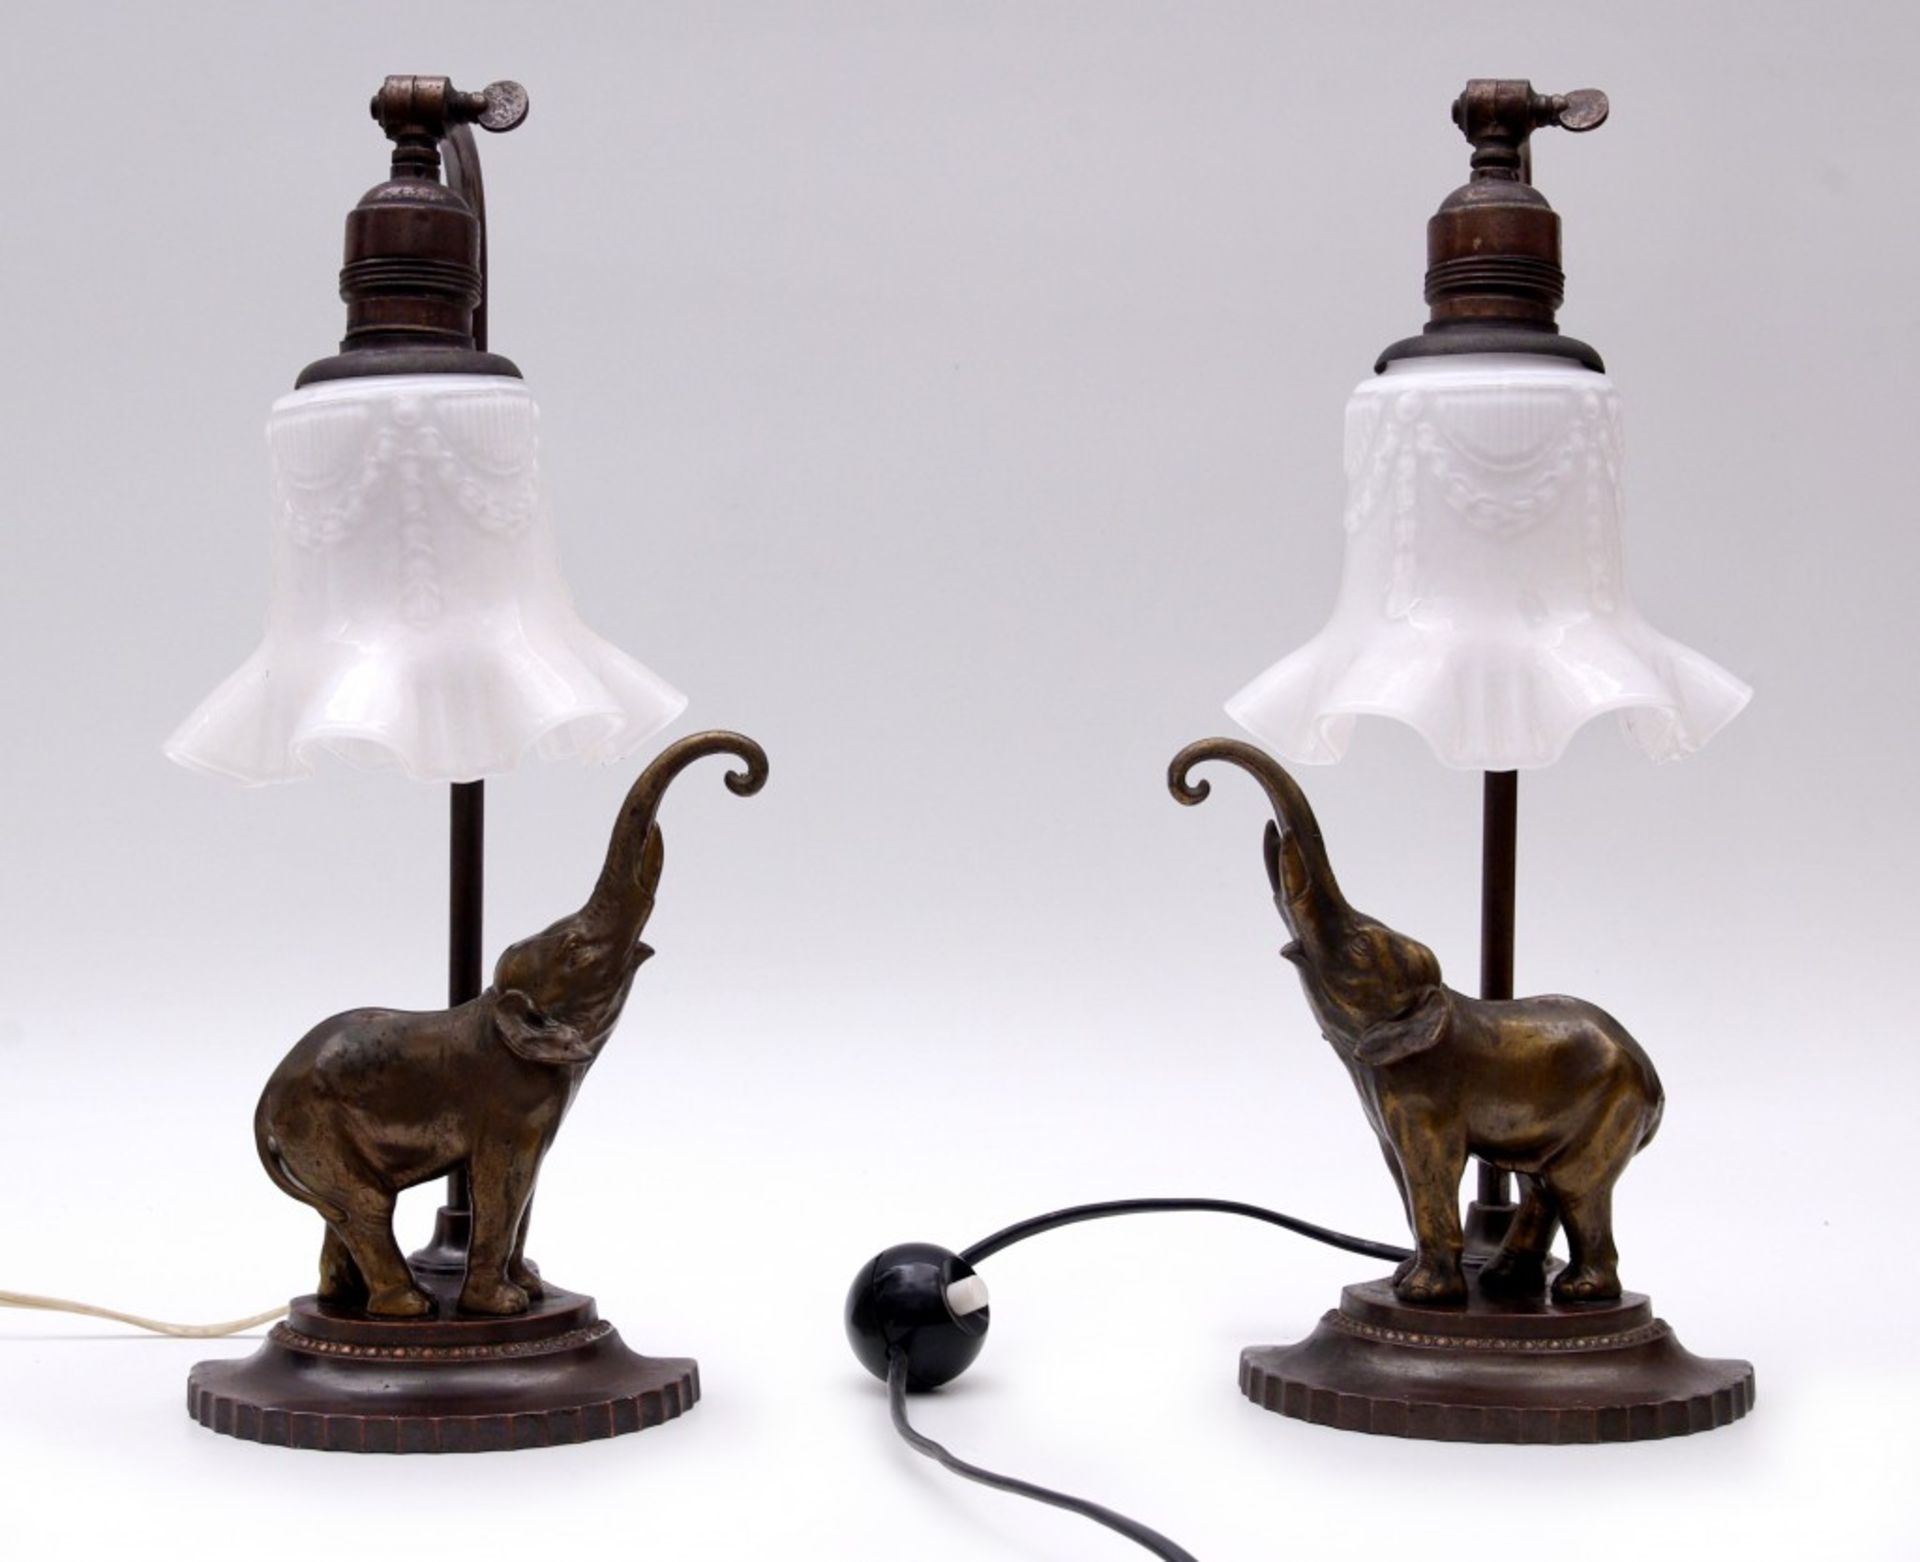 Pair of Elephant Motif Lamps, Art-Nouveau